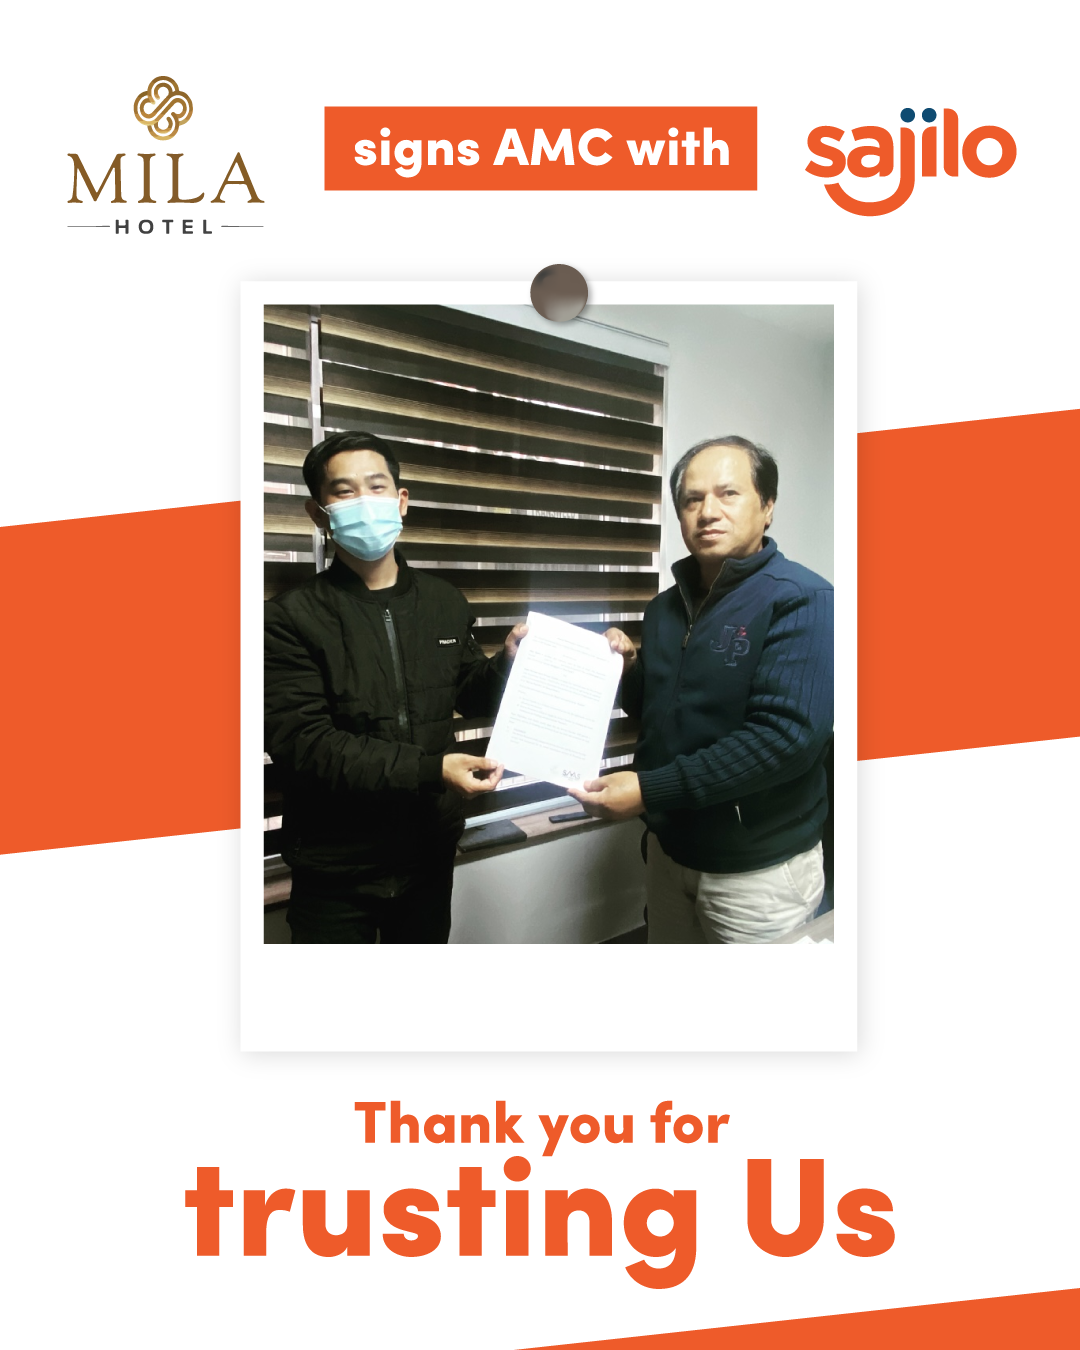 AMC signed with Mila Hotel